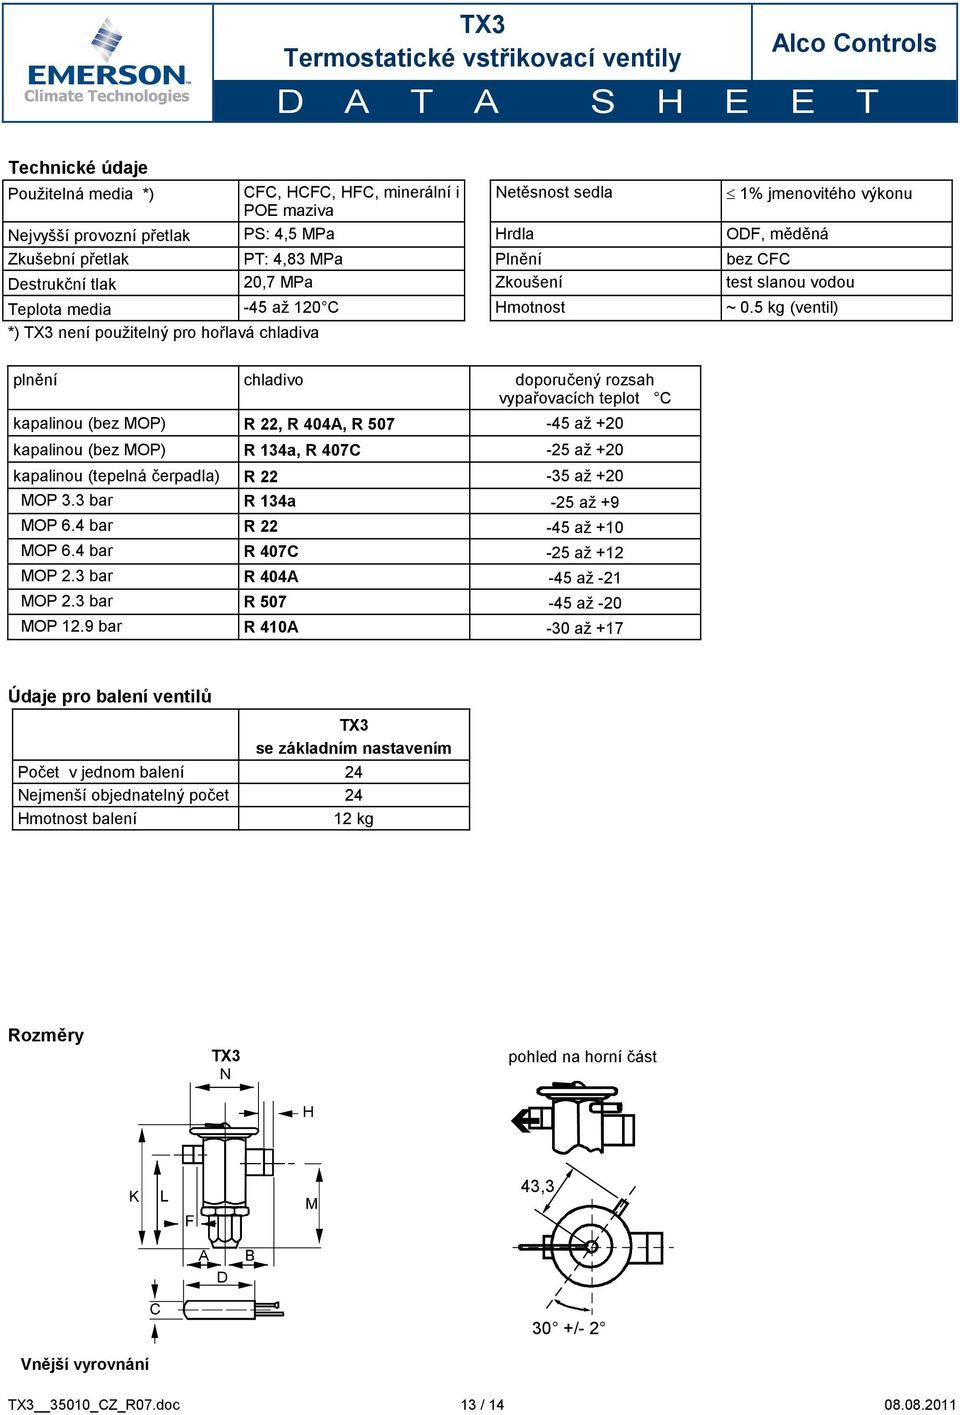 5 kg (ventil) *) TX3 není použitelný pro hořlavá chladiva plnění chladivo doporučený rozsah vypařovacích teplot C kapalinou (bez MOP) R 22, R 404A, R 507-45 až +20 kapalinou (bez MOP) R 134a, R 407C